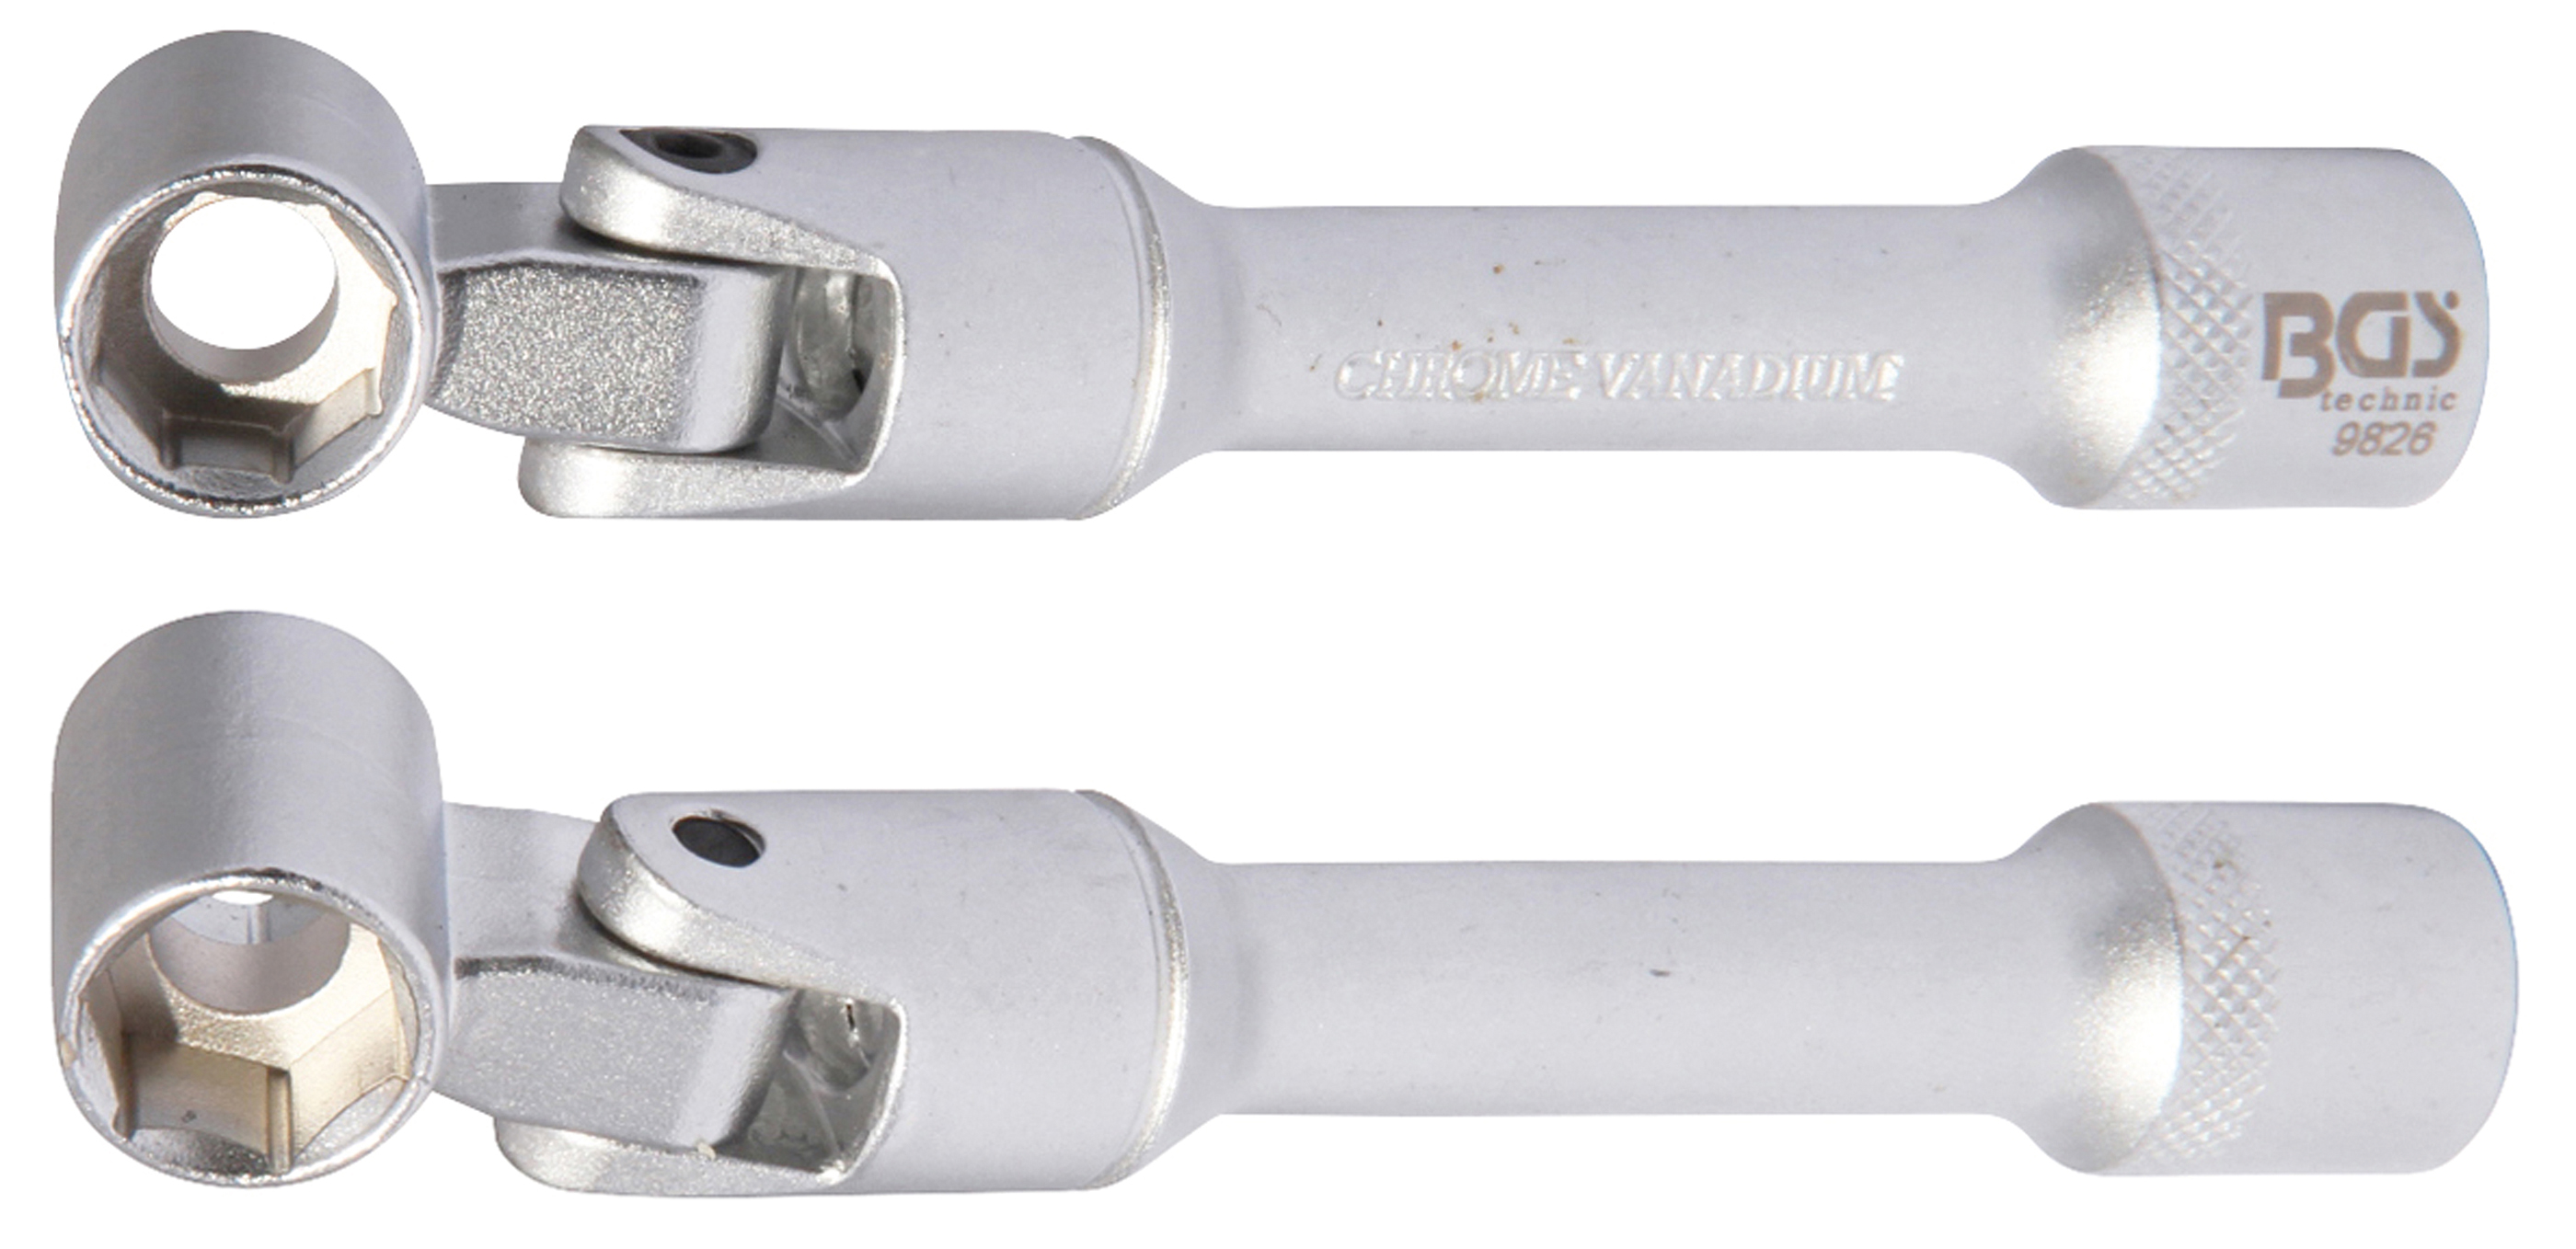 BGS 9826 Cap cheie articulat jambă suspensie pentru VAG, 13 mm